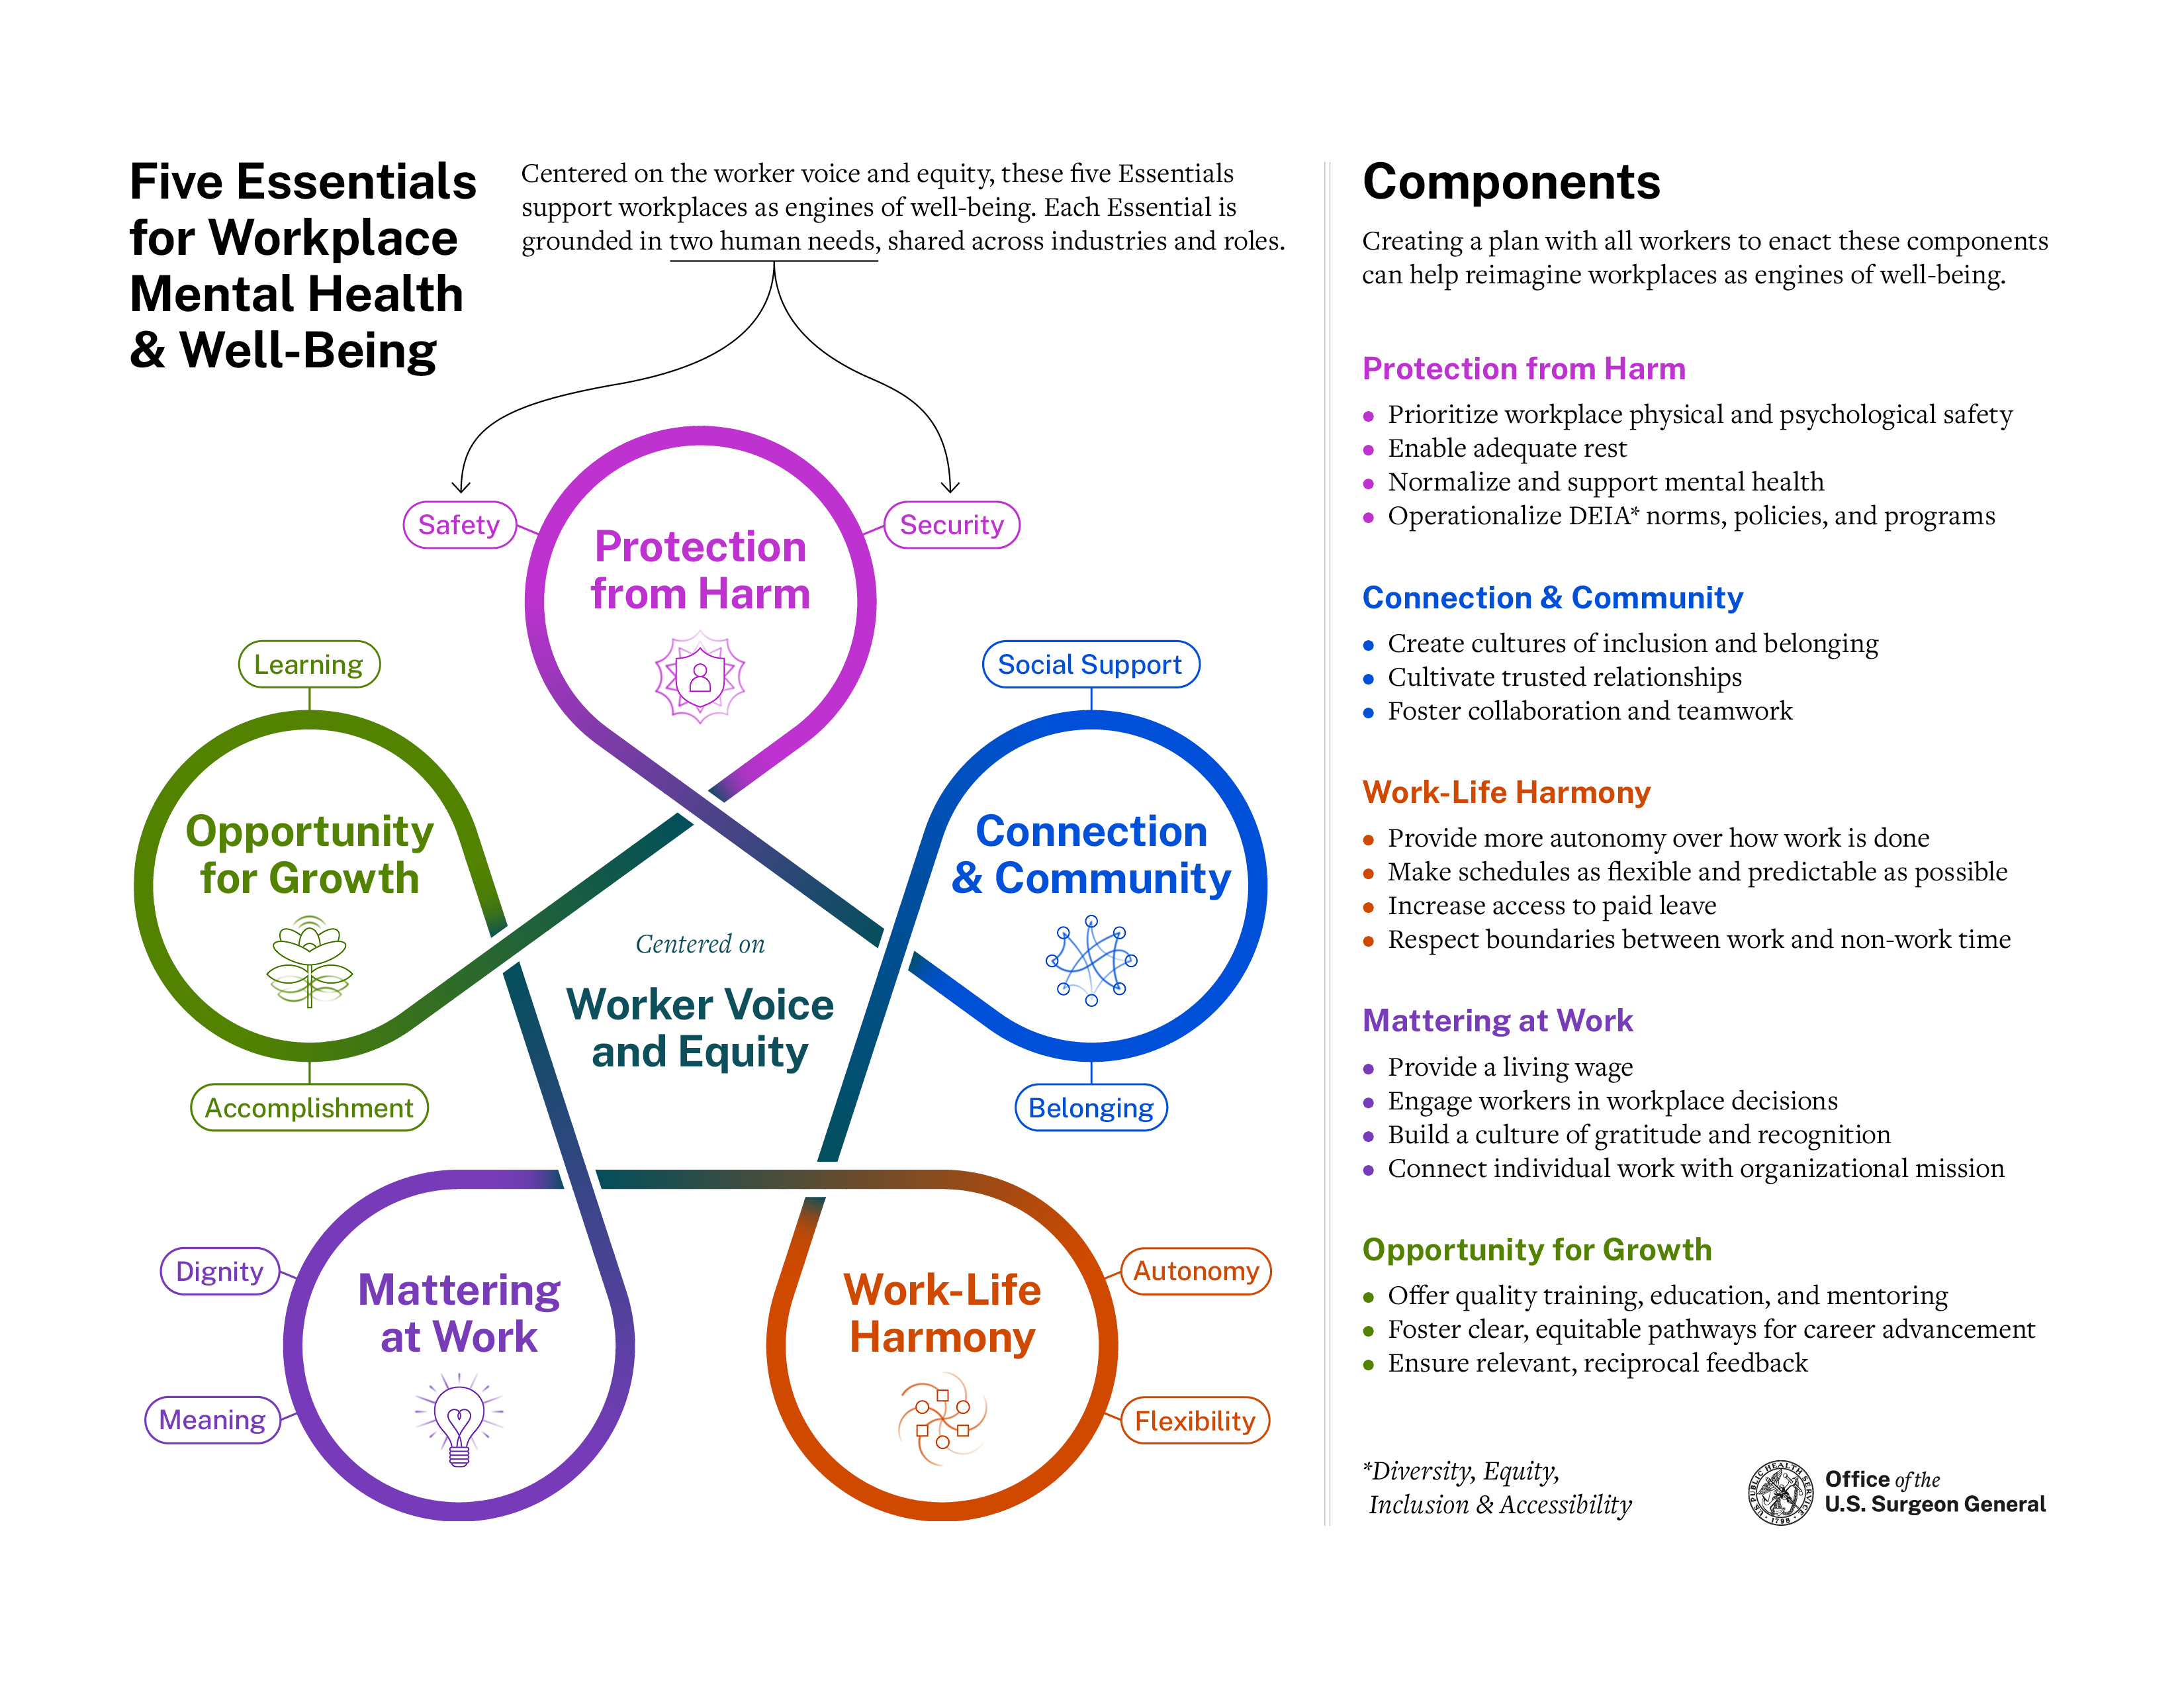 Graphique du Workplace Framework publié par le Surgeon General pour aider la santé mentale au travail